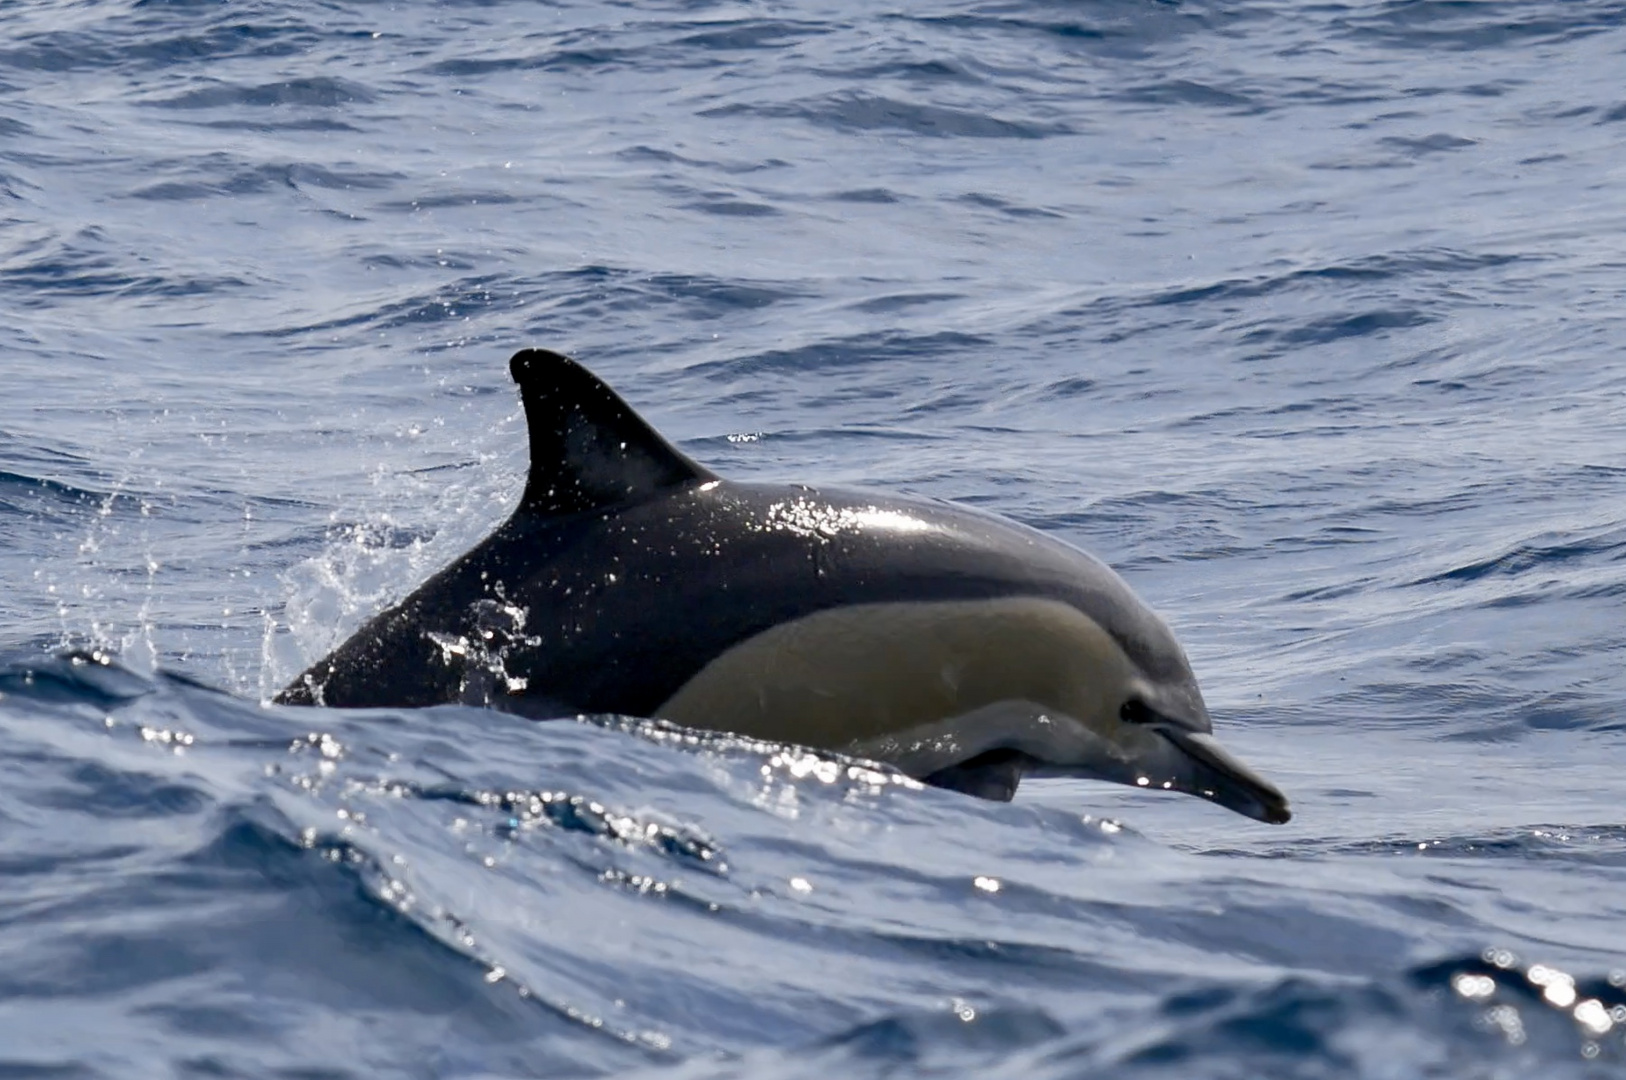 Gewöhnlicher Delphin / Commun dolphin